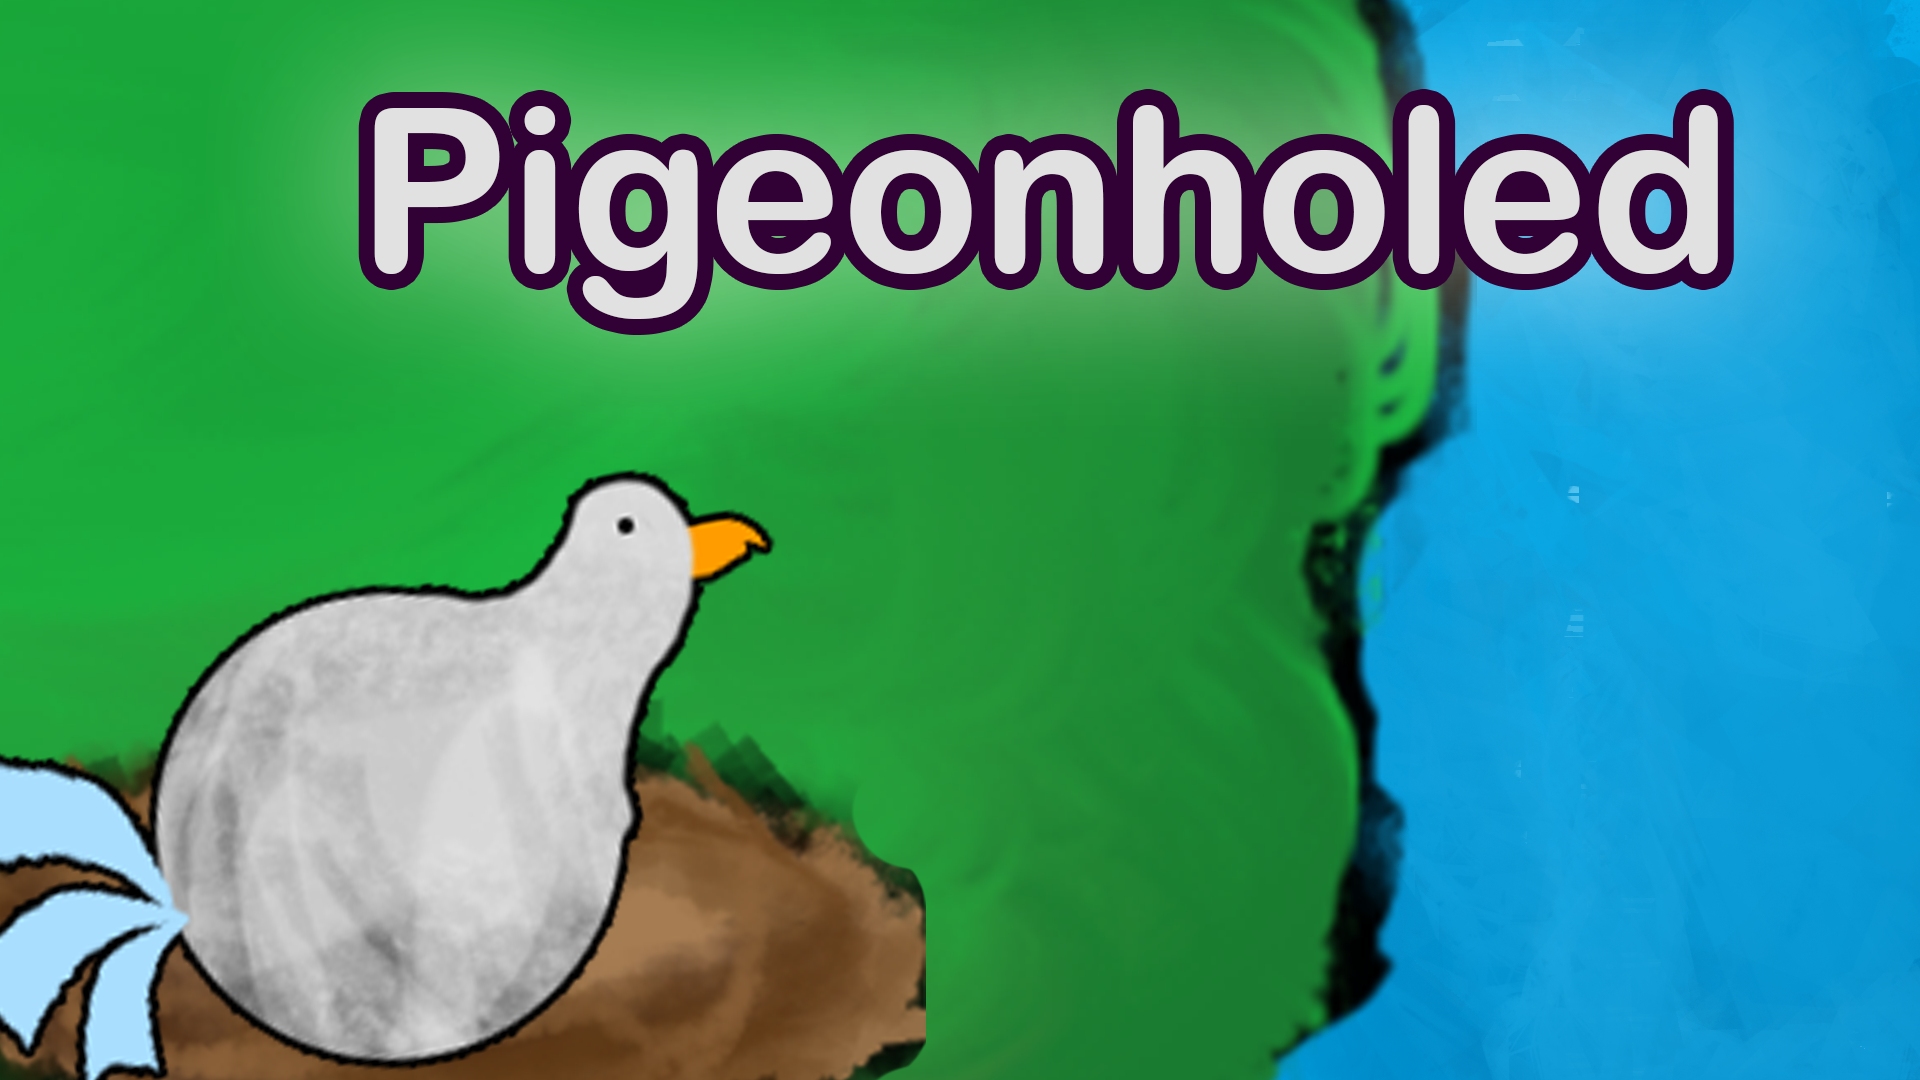 Pigeonholed